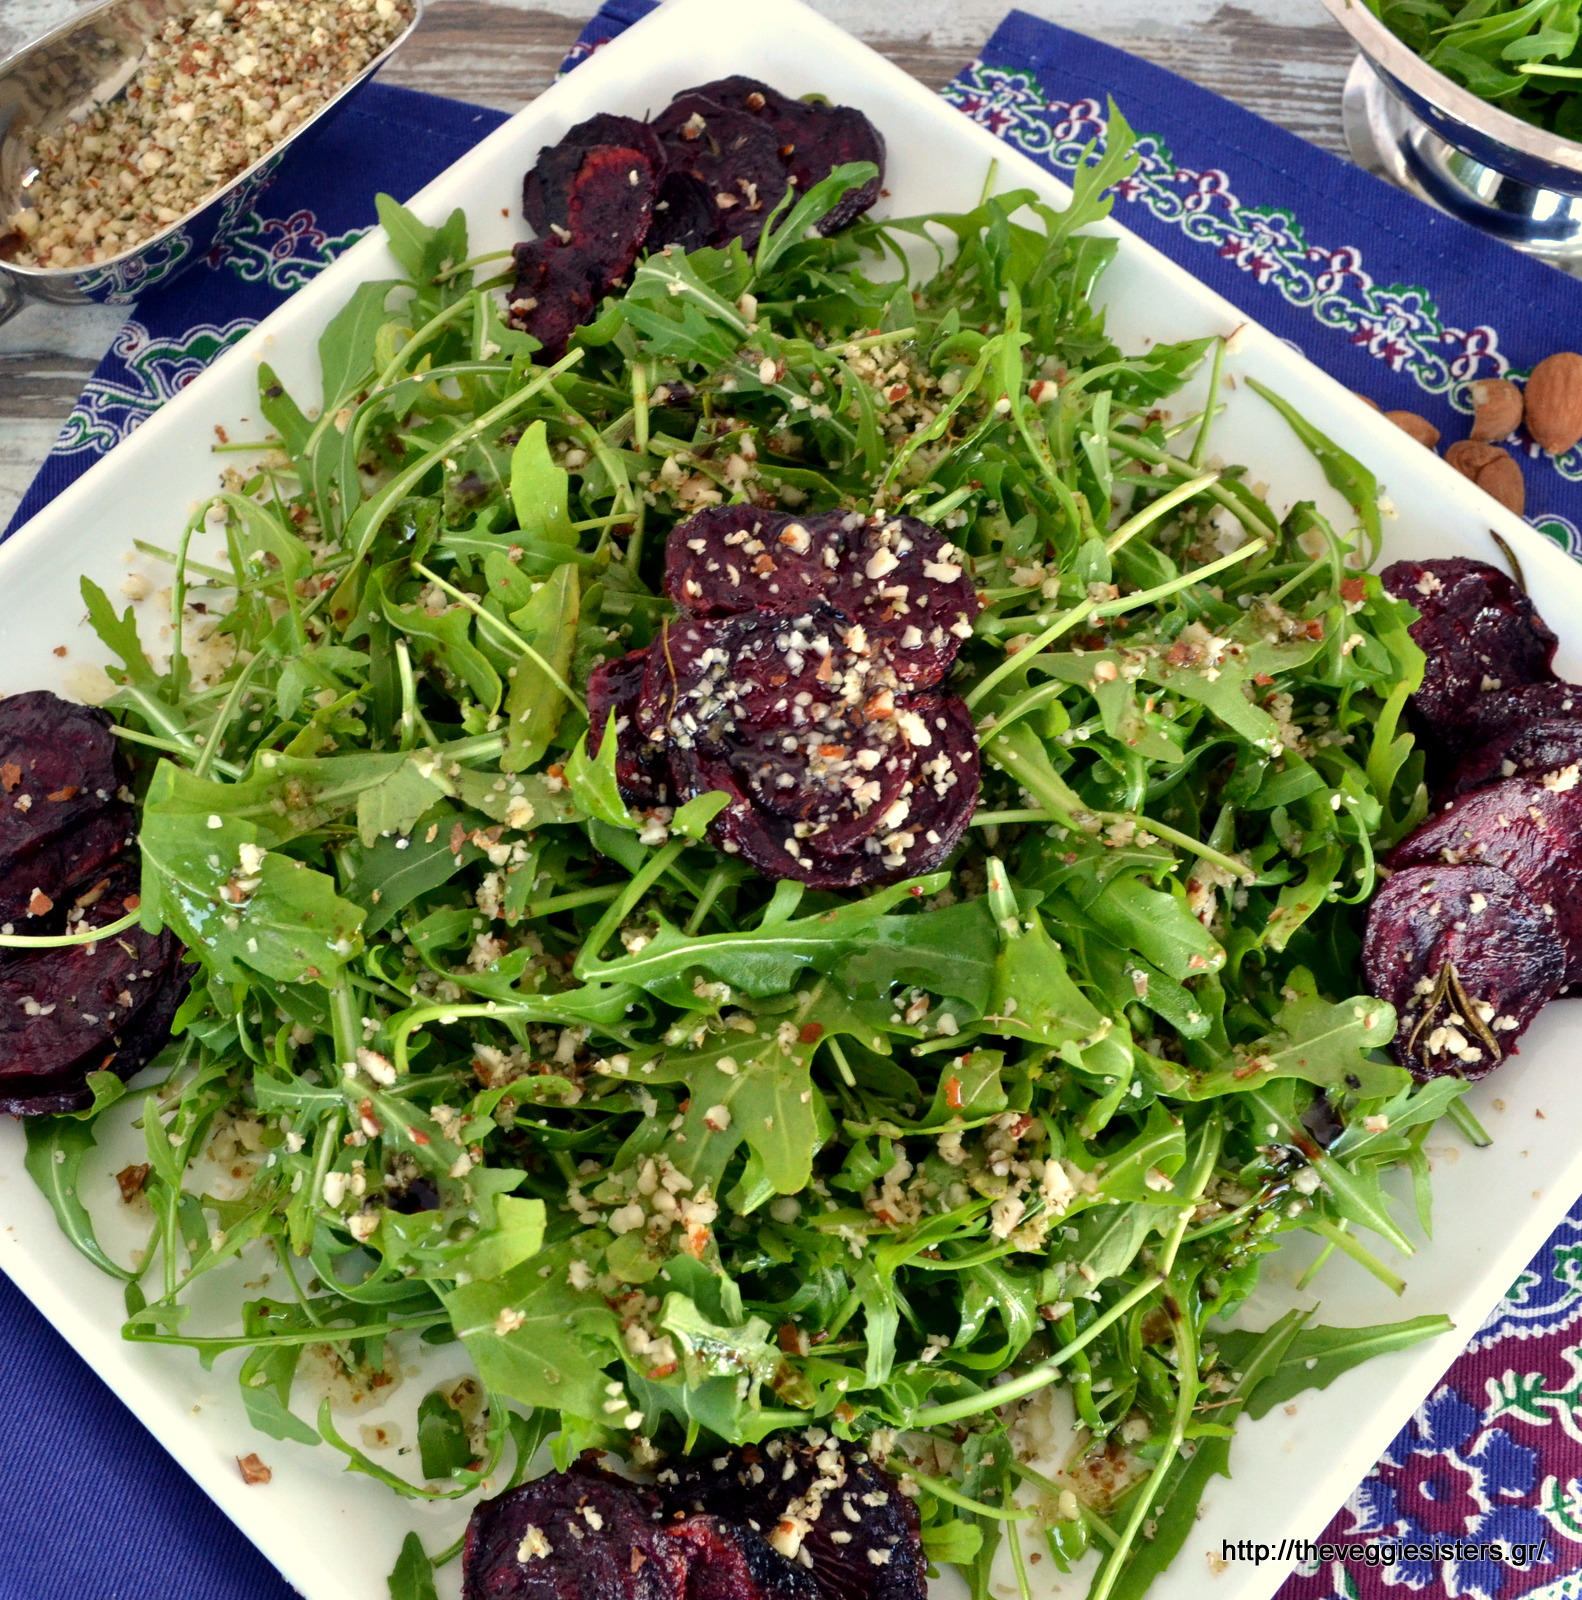 Πράσινη σαλάτα με ψητά παντζάρια κ αμύγδαλα - Green roasted beet almond salad